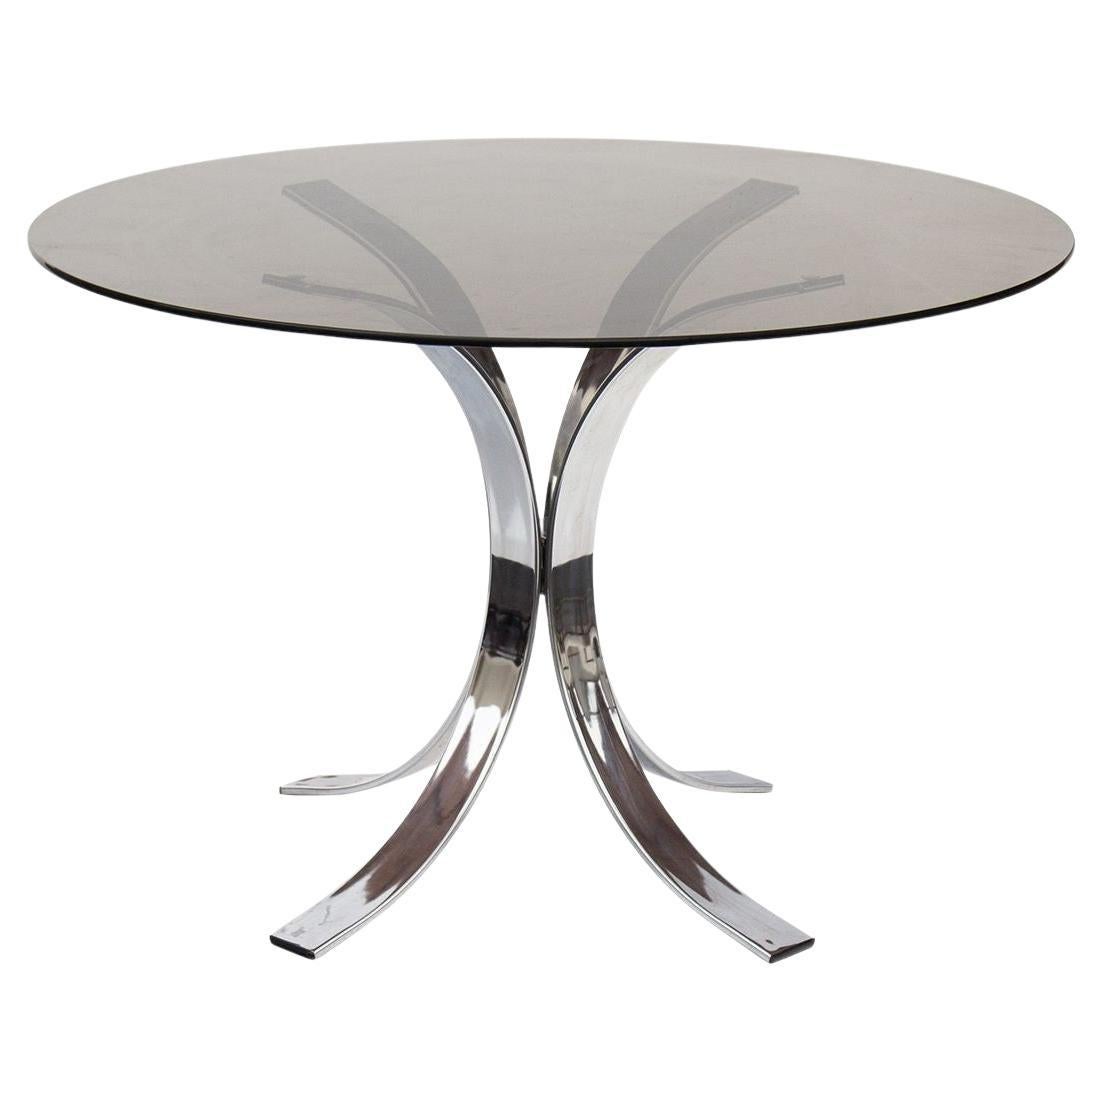 Chrome Dining Table by Osvaldo Borsani for Stow & Davis